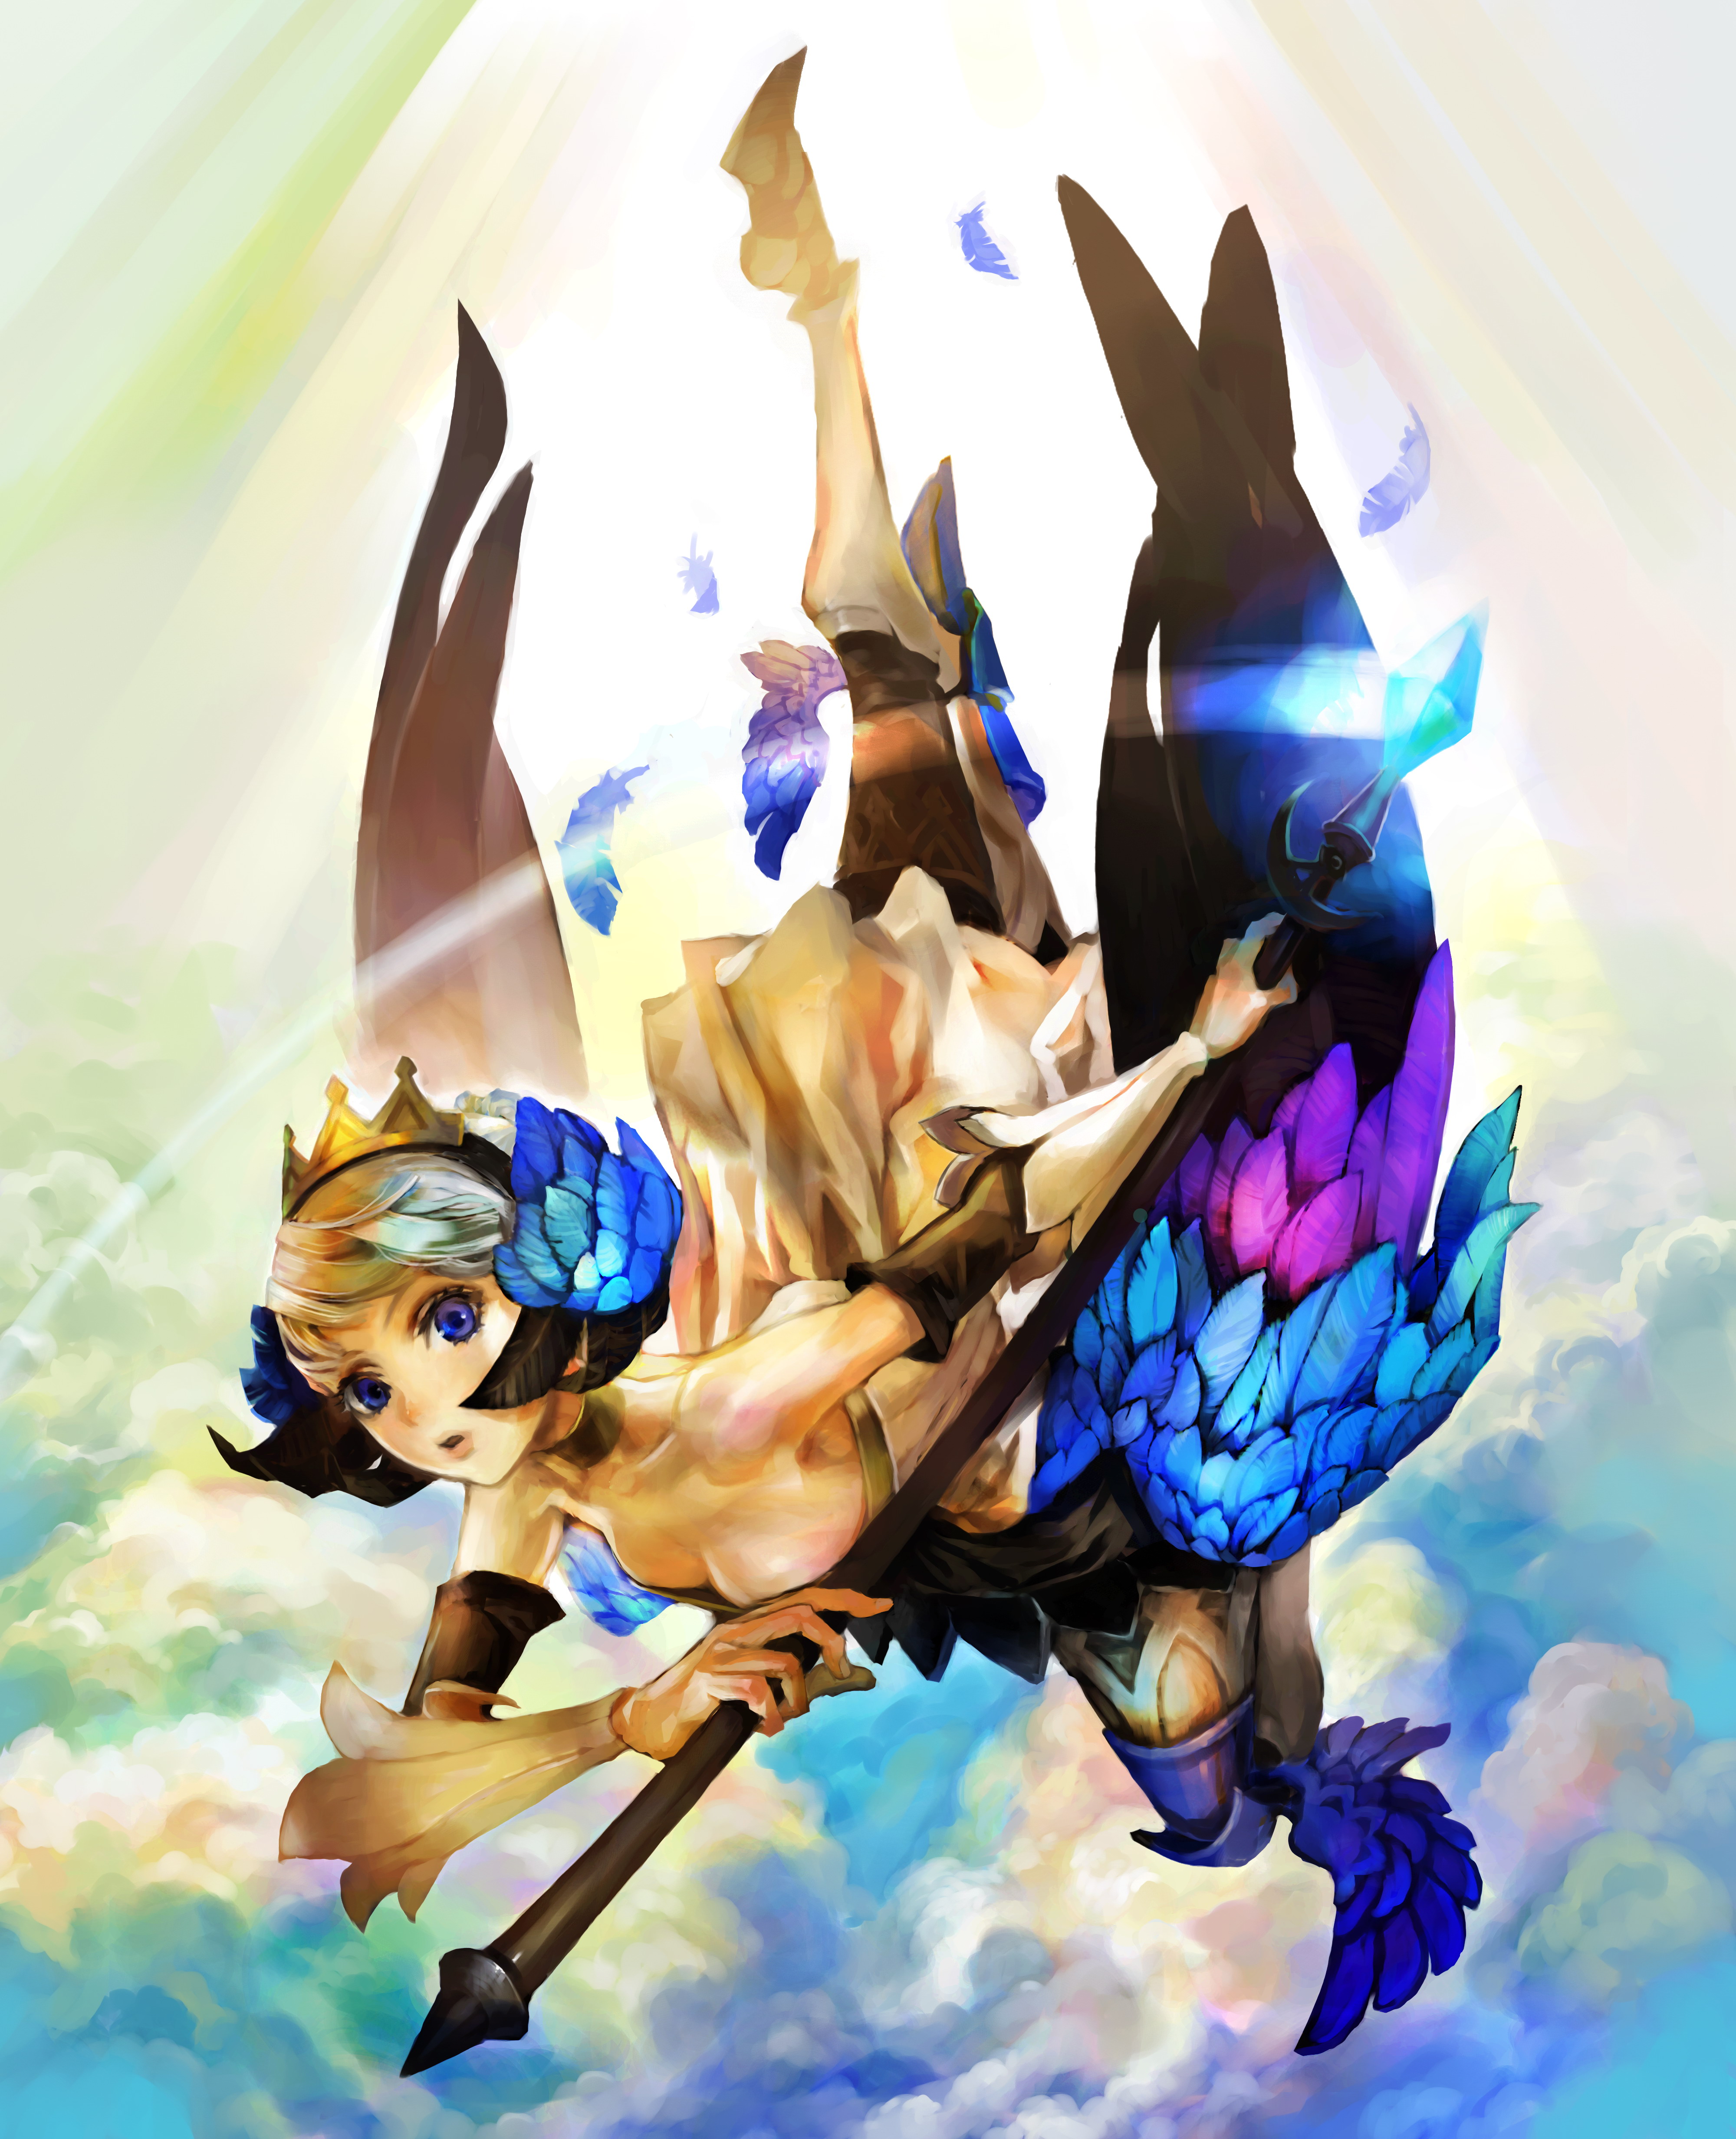 wings, blue eyes, feathers, Odin Sphere, artwork, Gwendolyn, anime girls - desktop wallpaper